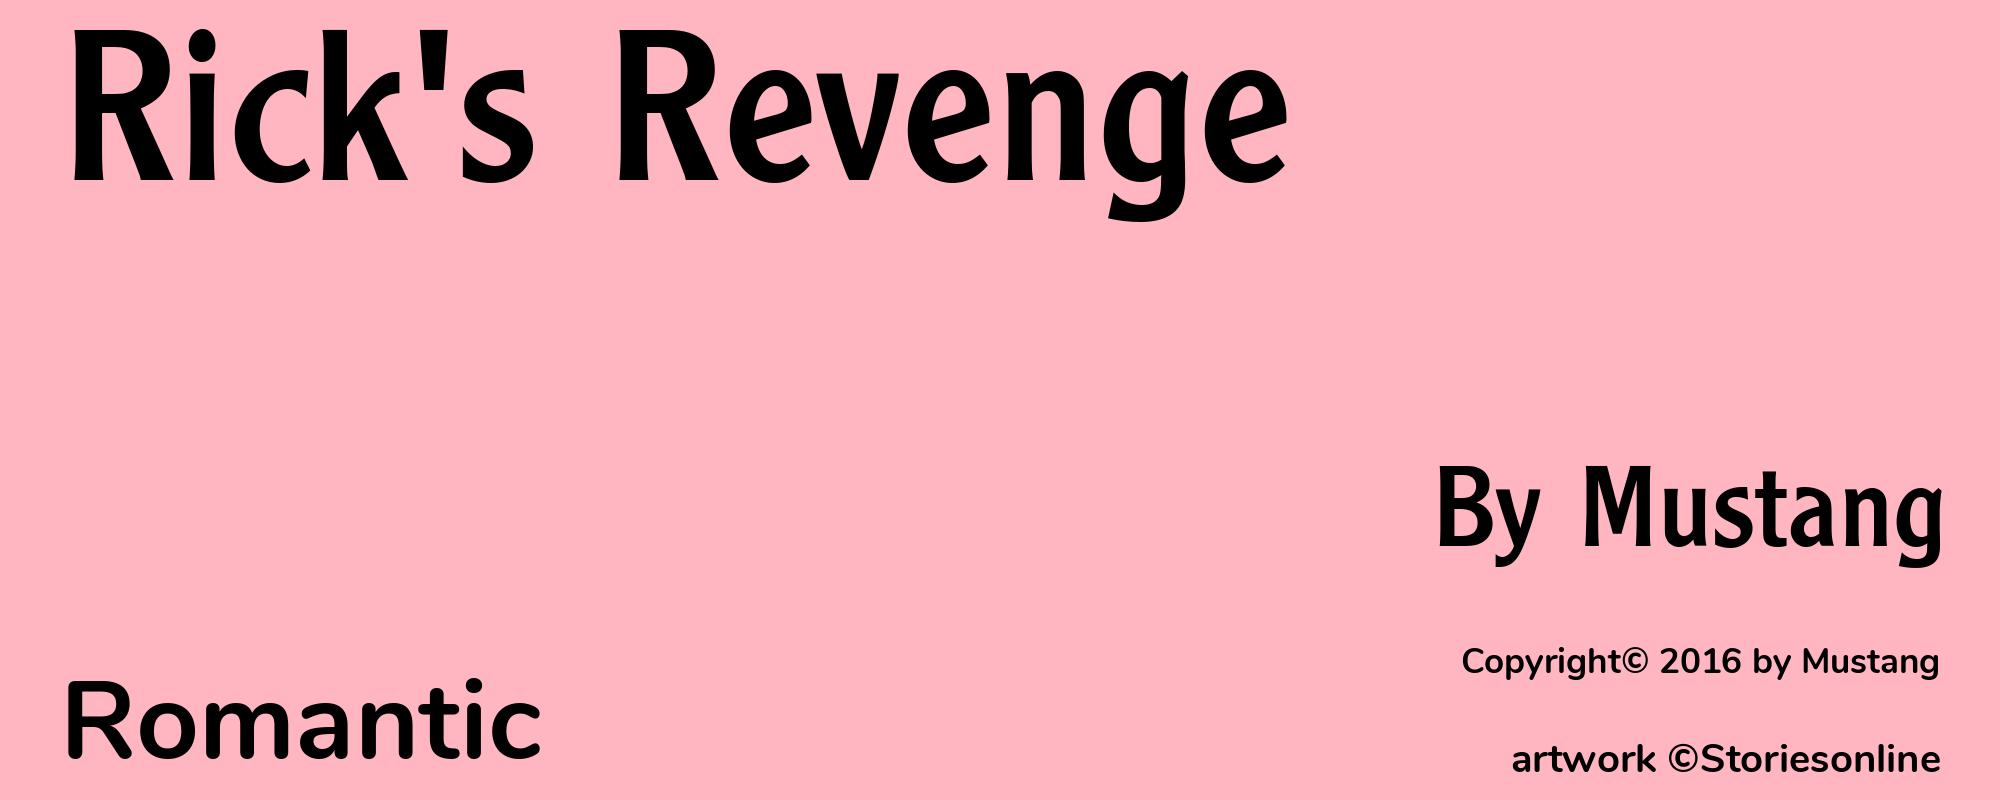 Rick's Revenge - Cover